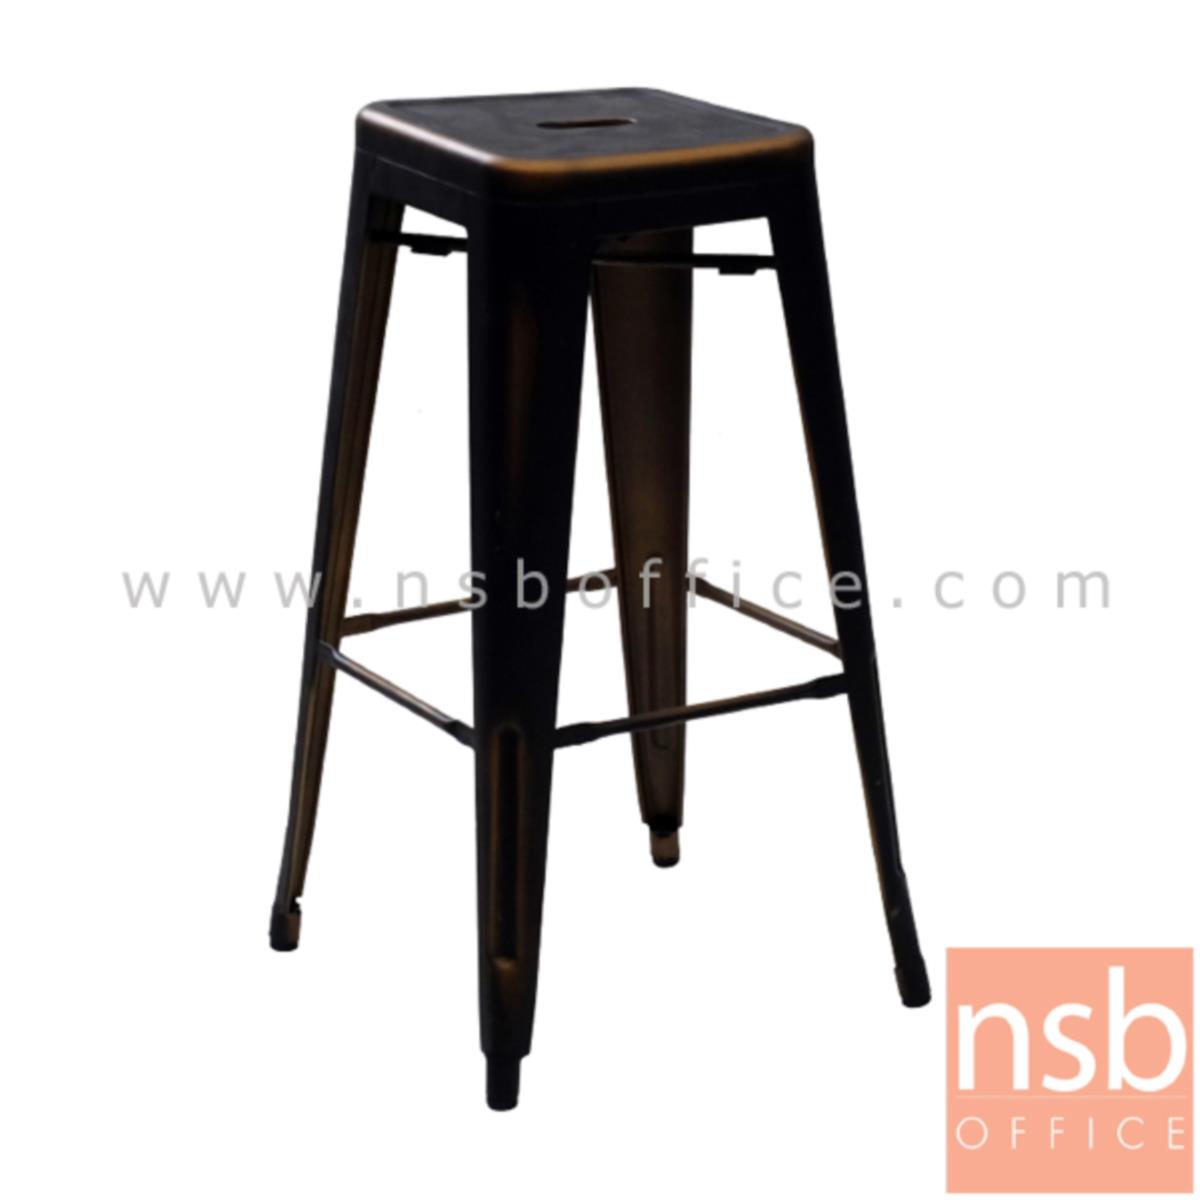 B09A159:เก้าอี้บาร์สูงเหล็ก รุ่น NP31129 ขนาด 30W cm. โครงเหล็กสีทองแดง